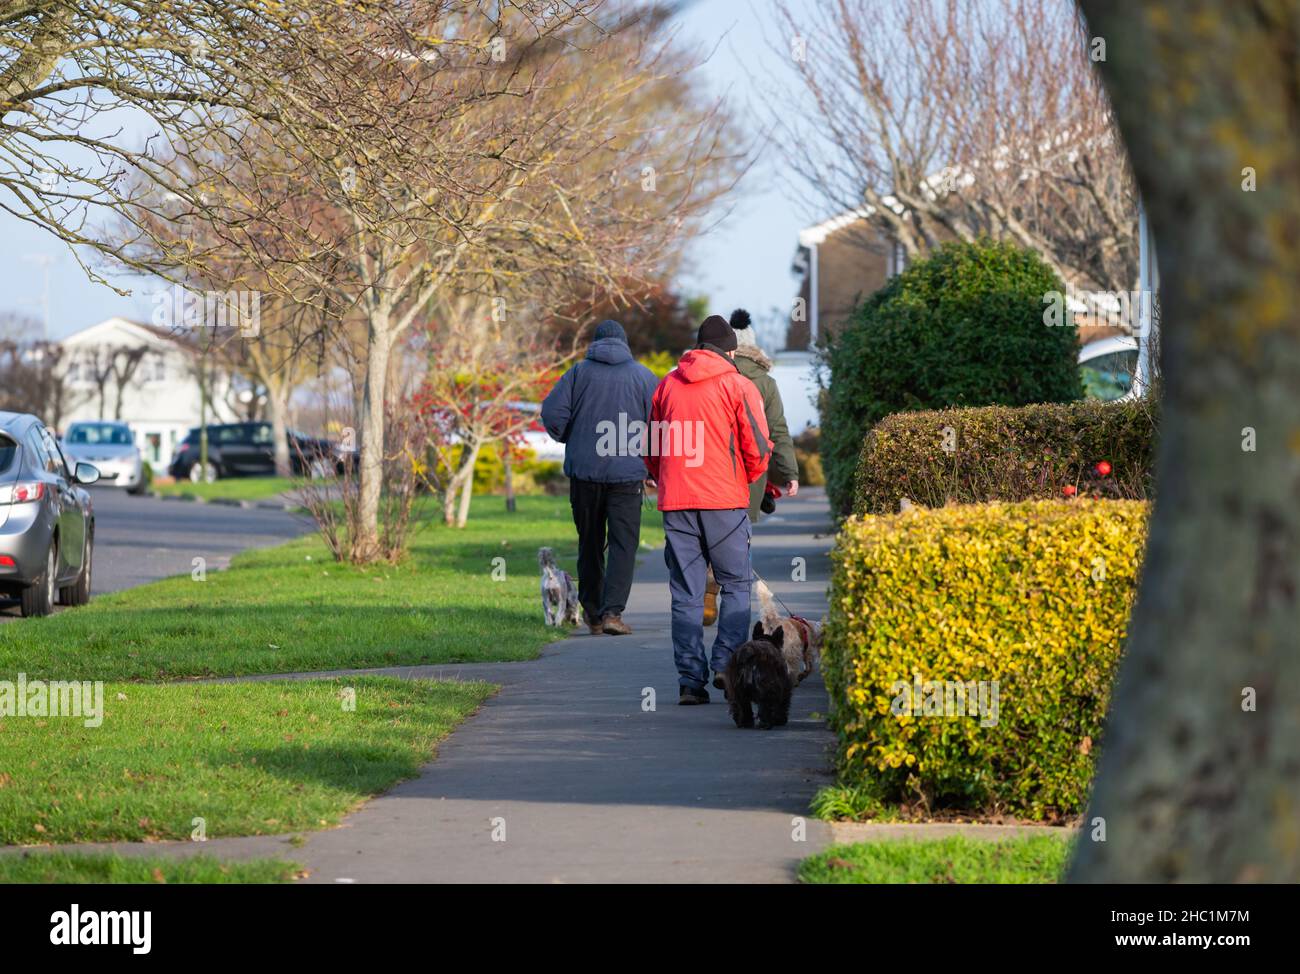 Persone che camminano lungo un marciapiede stradale in inverno, vestiti con cappotti caldi, cani da passeggio in Inghilterra, Regno Unito. Foto Stock